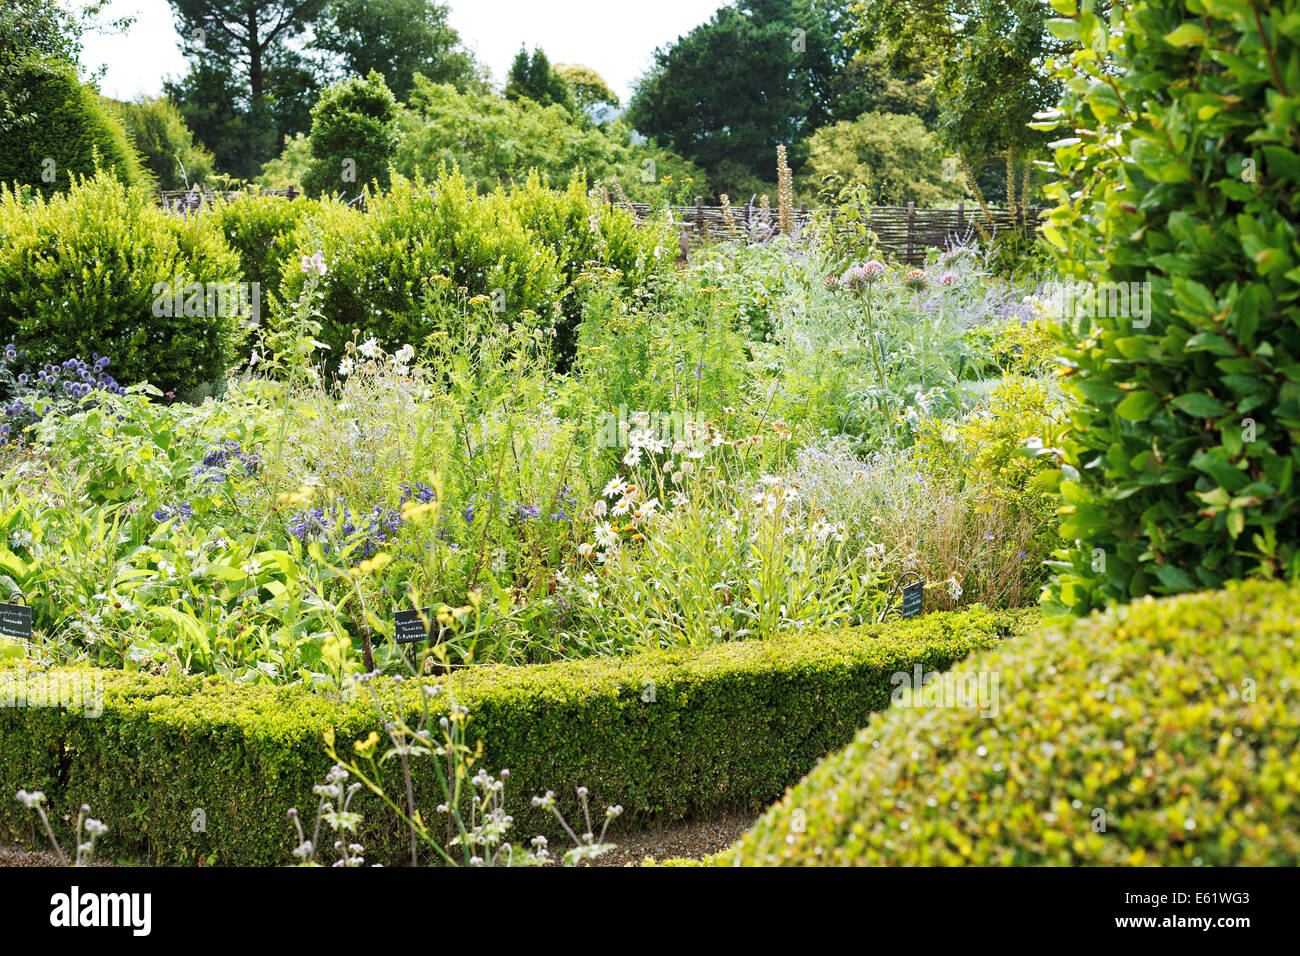 ANGERS, Francia - 28 luglio 2014: appendere un giardino botanico con erbe medicative nel castello di Angers, Francia. Chateau d'Angers è stato fo Foto Stock